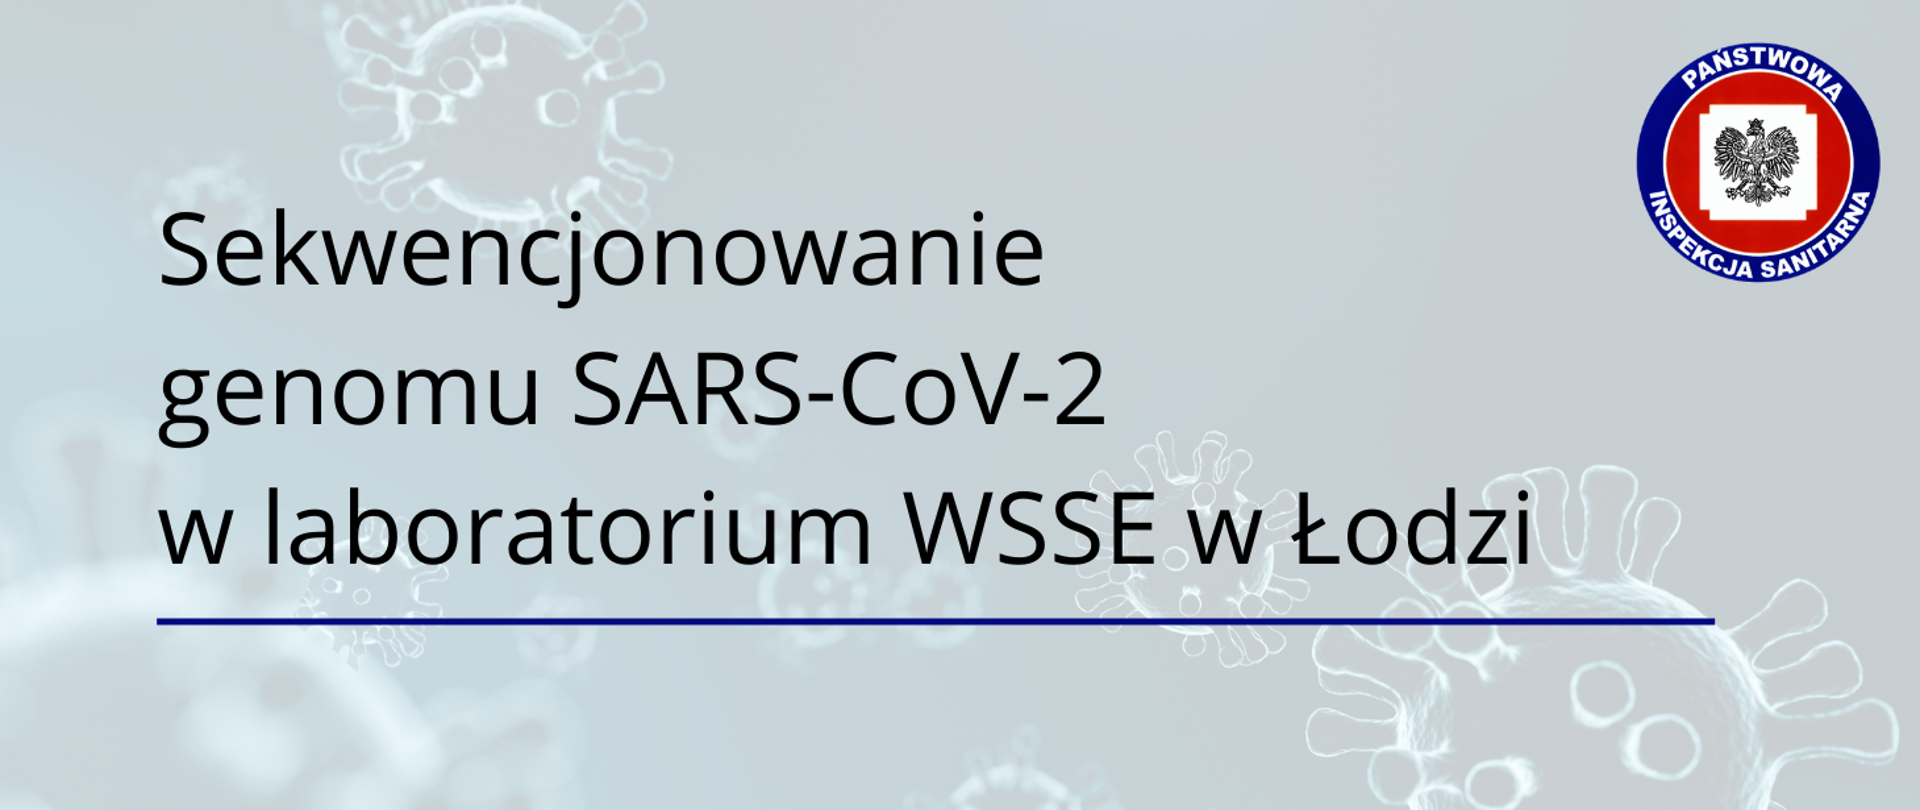 Grafika z tekstem: Sekwencjonowanie genomu SARS-CoV-2 w laboratorium WSSE w Łodzi. Logo Państwowej Inspekcji Sanitarnej. W tle grafika z koronawirusami.